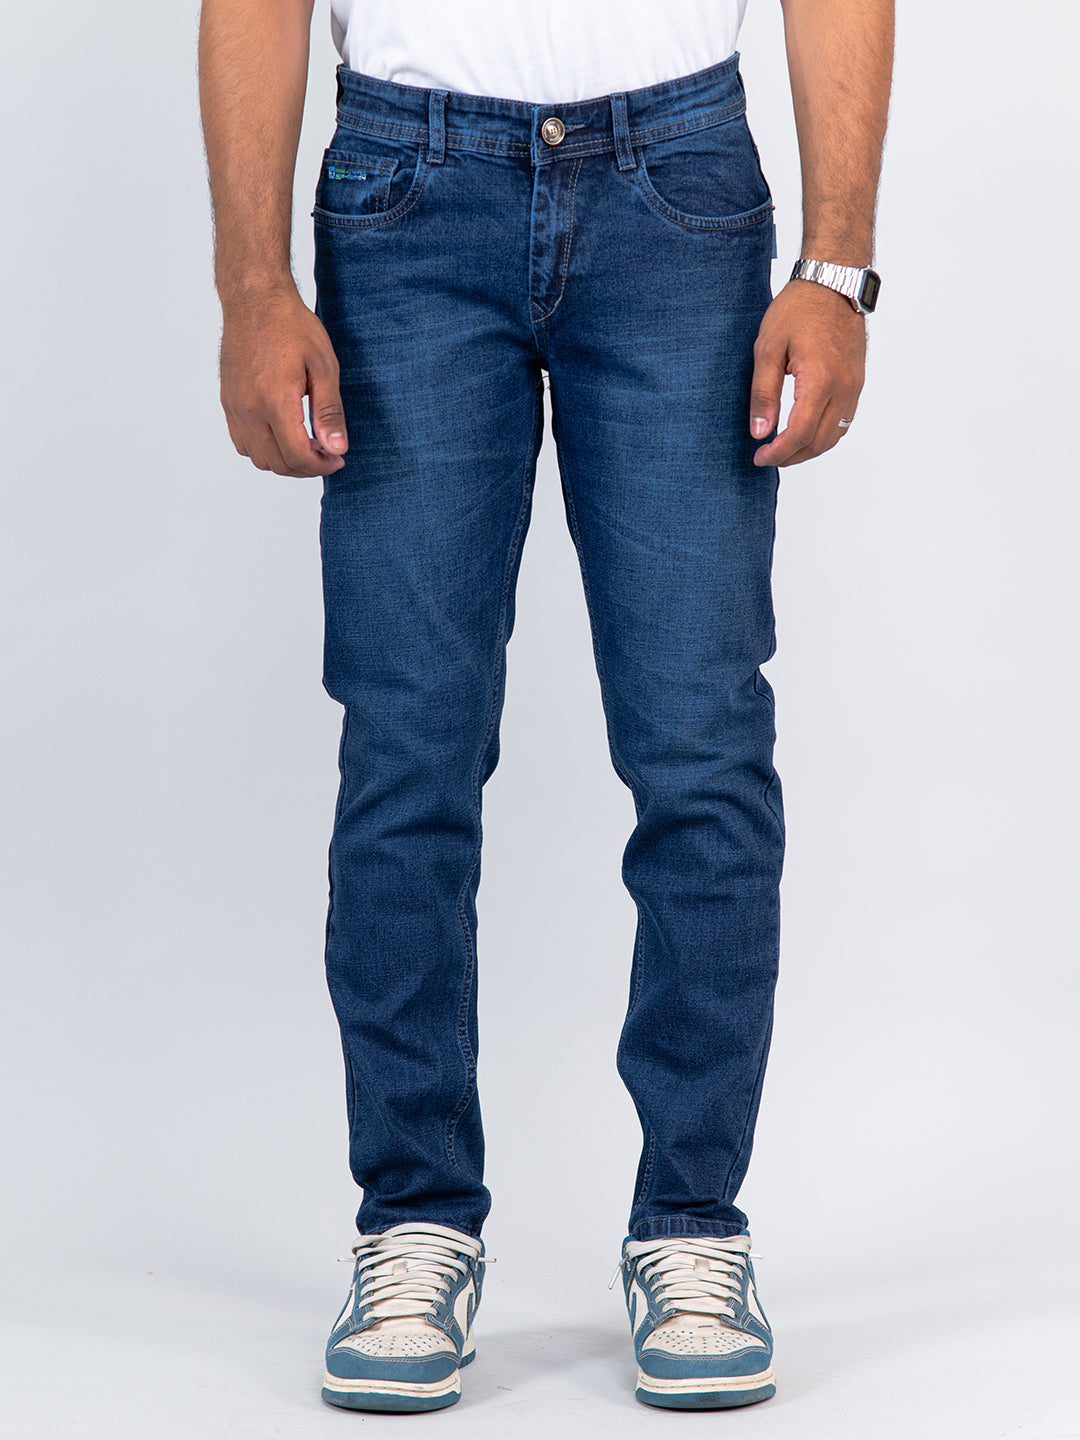 Buy Men Blue Dark Slim Fit Jeans Online - 739120 | Louis Philippe